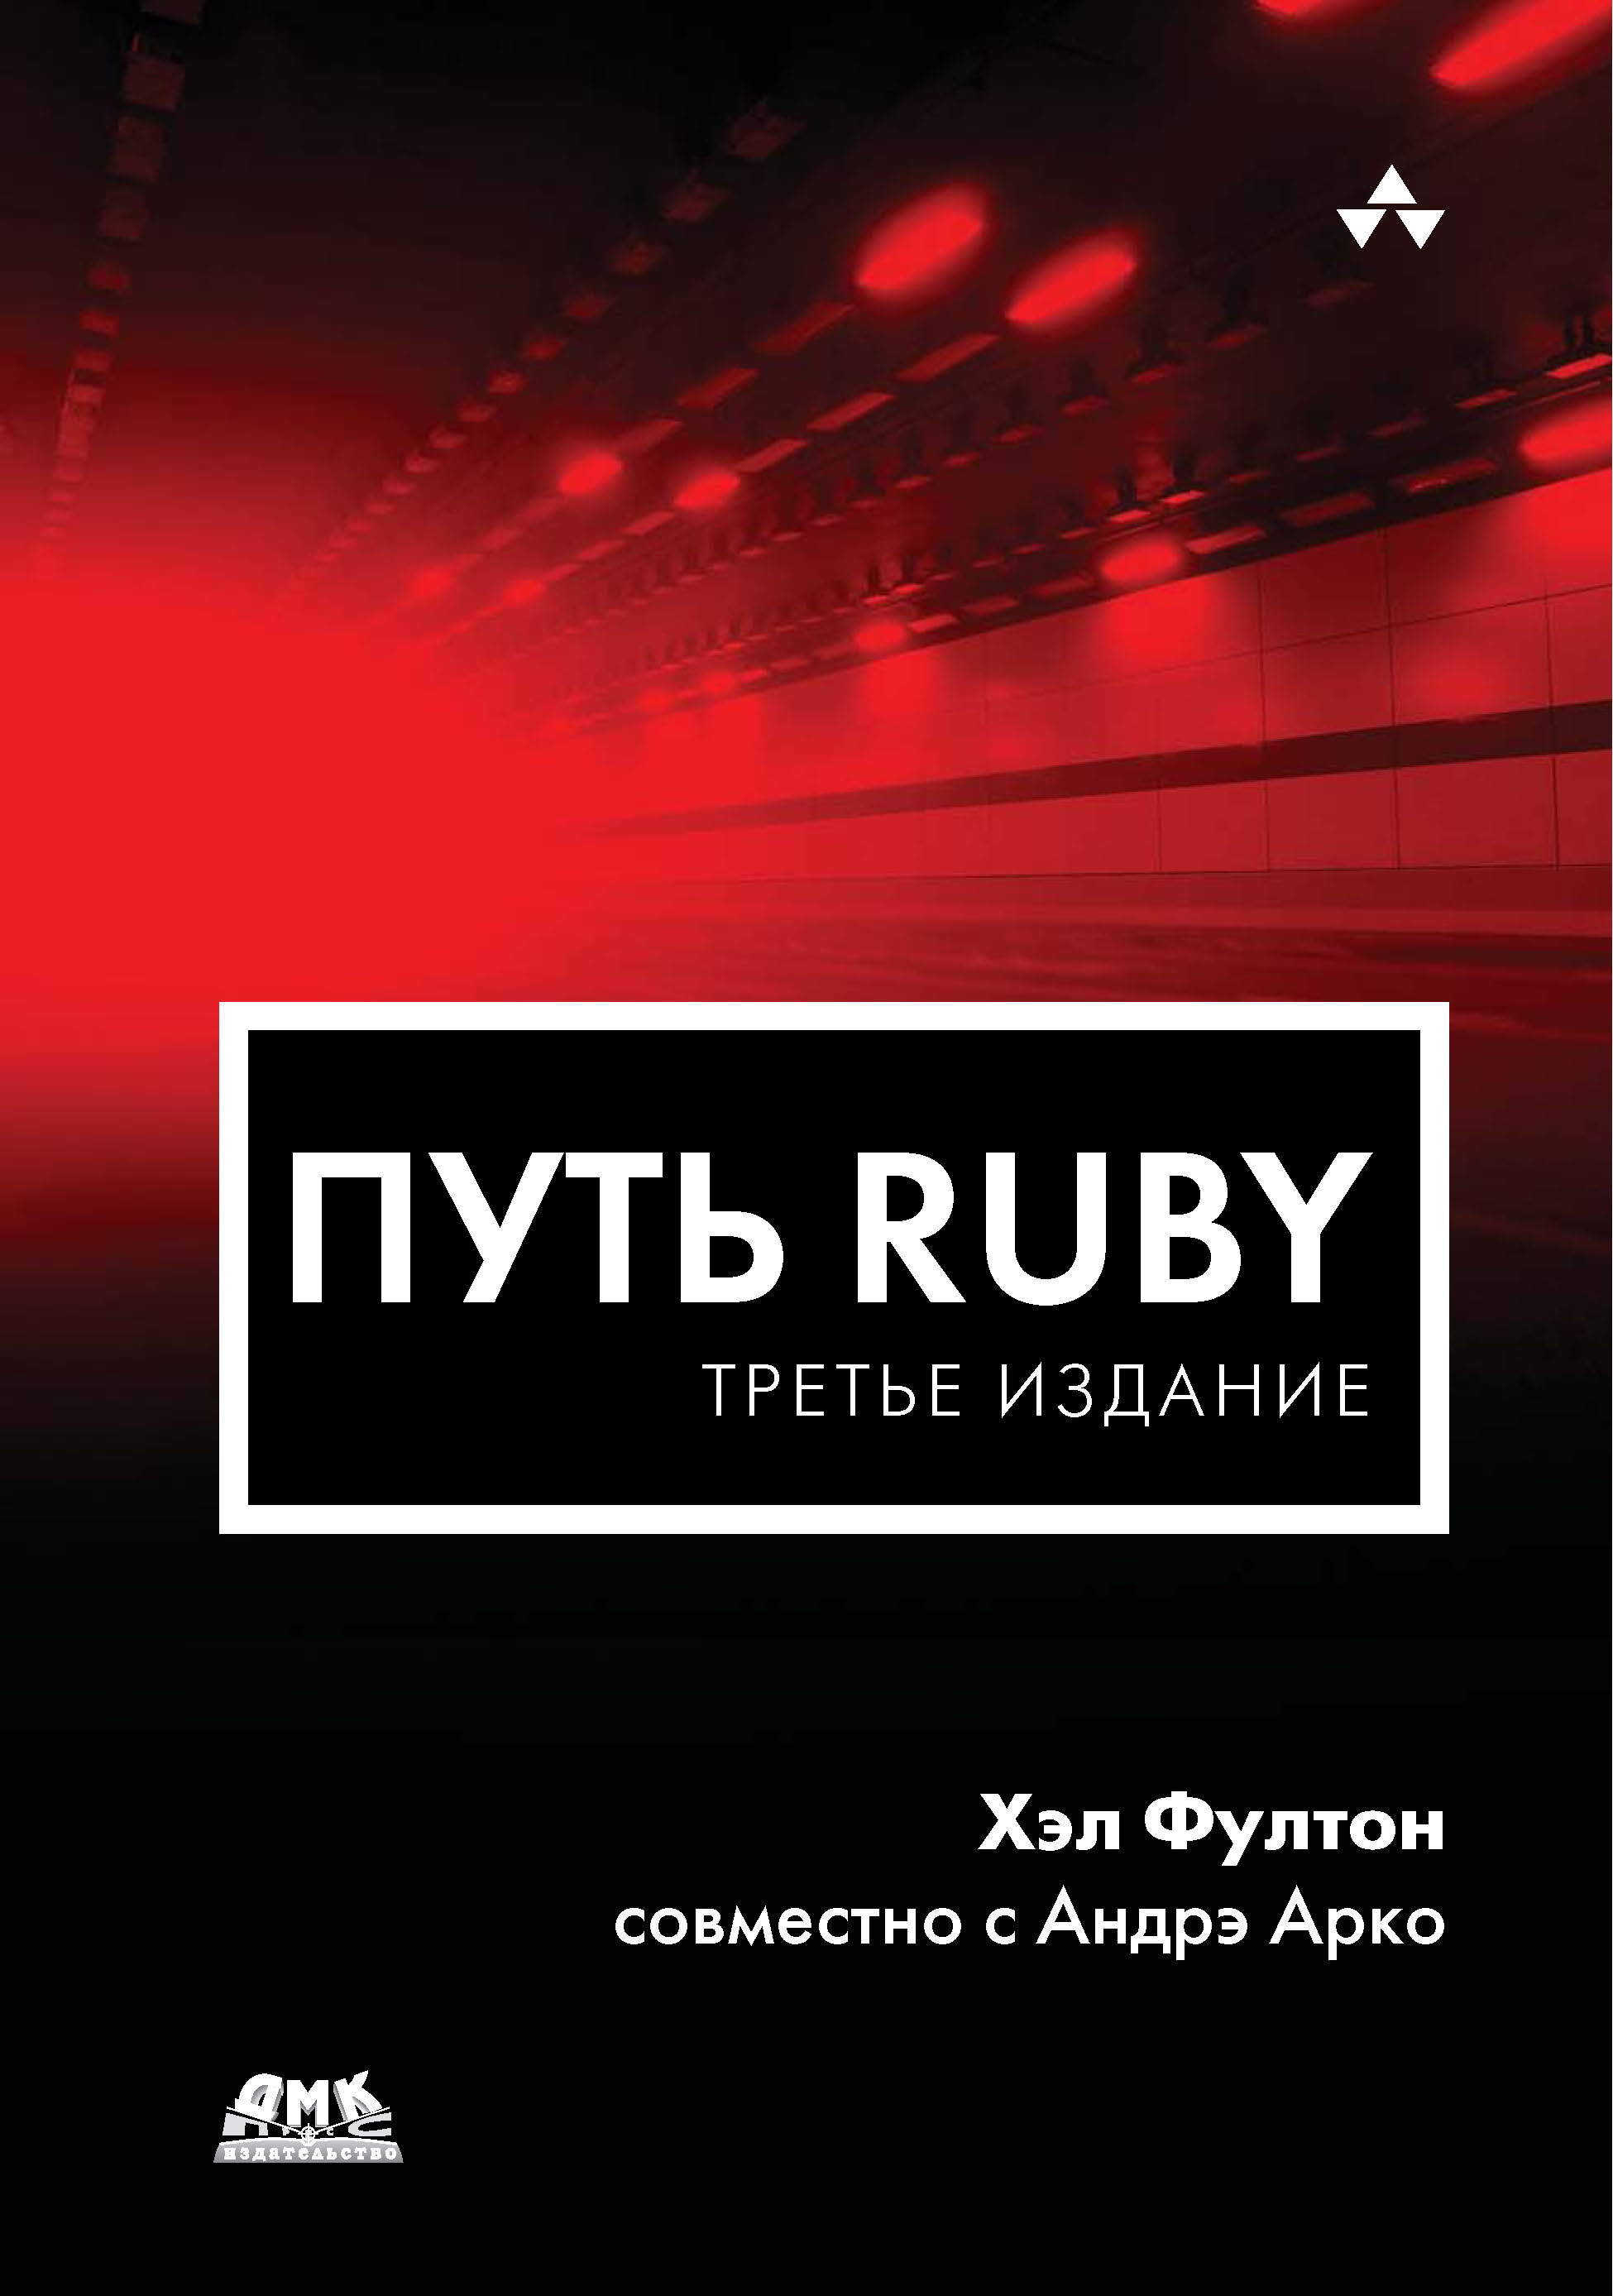 Книга  Путь Ruby созданная Хэл Фултон, Андрэ Арко, А. А. Слинкин может относится к жанру зарубежная компьютерная литература, зарубежная справочная литература, программирование, руководства. Стоимость электронной книги Путь Ruby с идентификатором 22880066 составляет 799.00 руб.